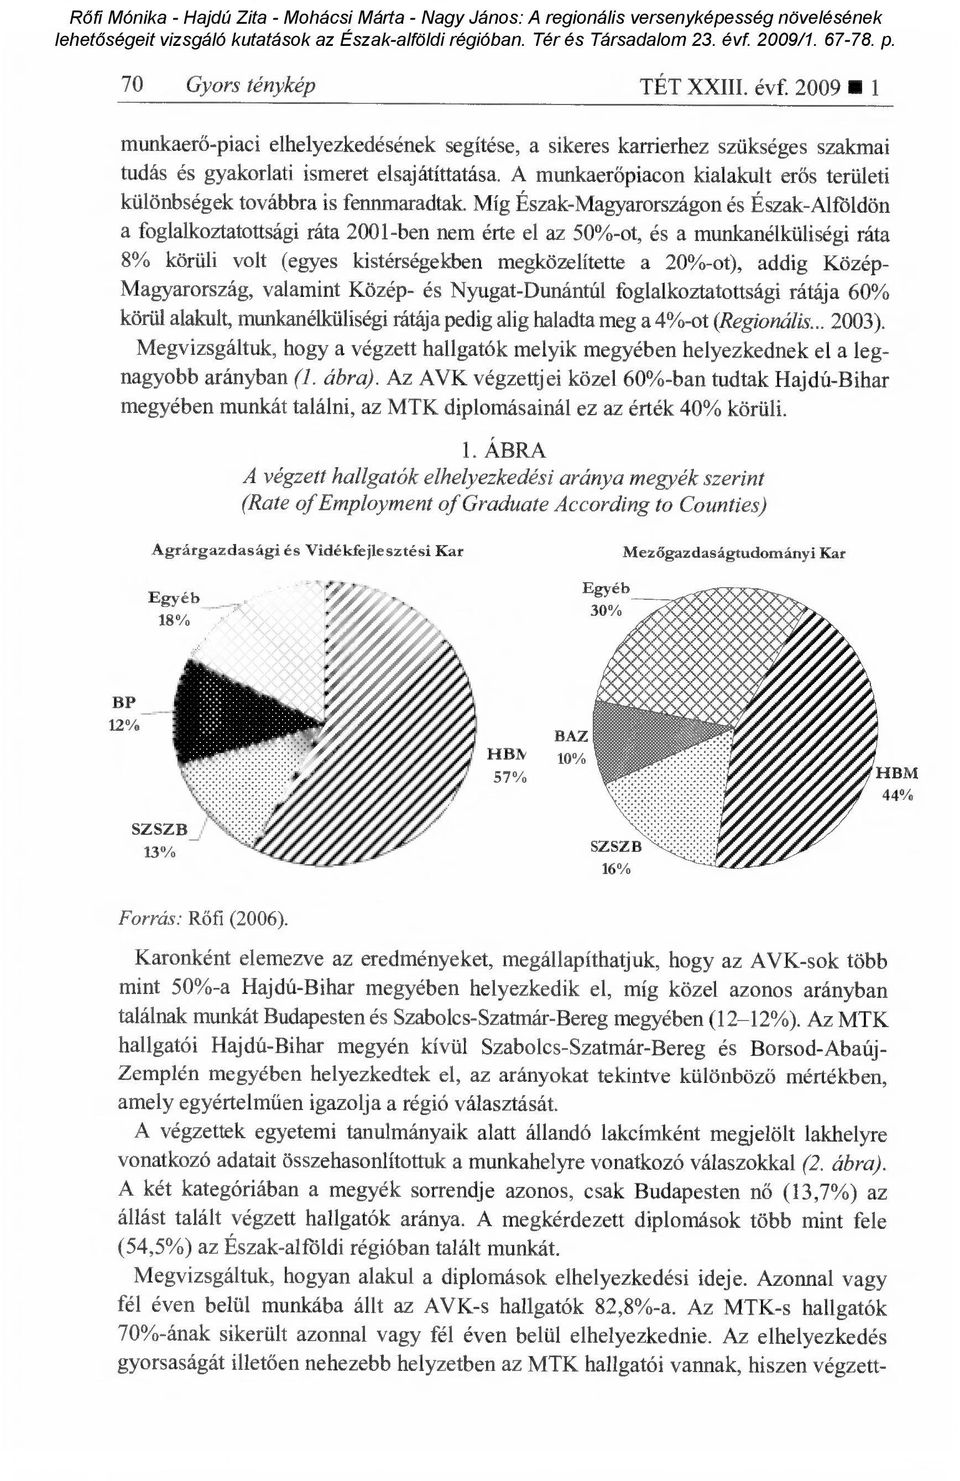 Míg Észak-Magyarországon és Észak-Alföldön a foglalkoztatottsági ráta 2001-ben nem érte el az 50%-ot, és a munkanélküliségi ráta 8% körüli volt (egyes kistérségekben megközelítette a 20%-ot), addig